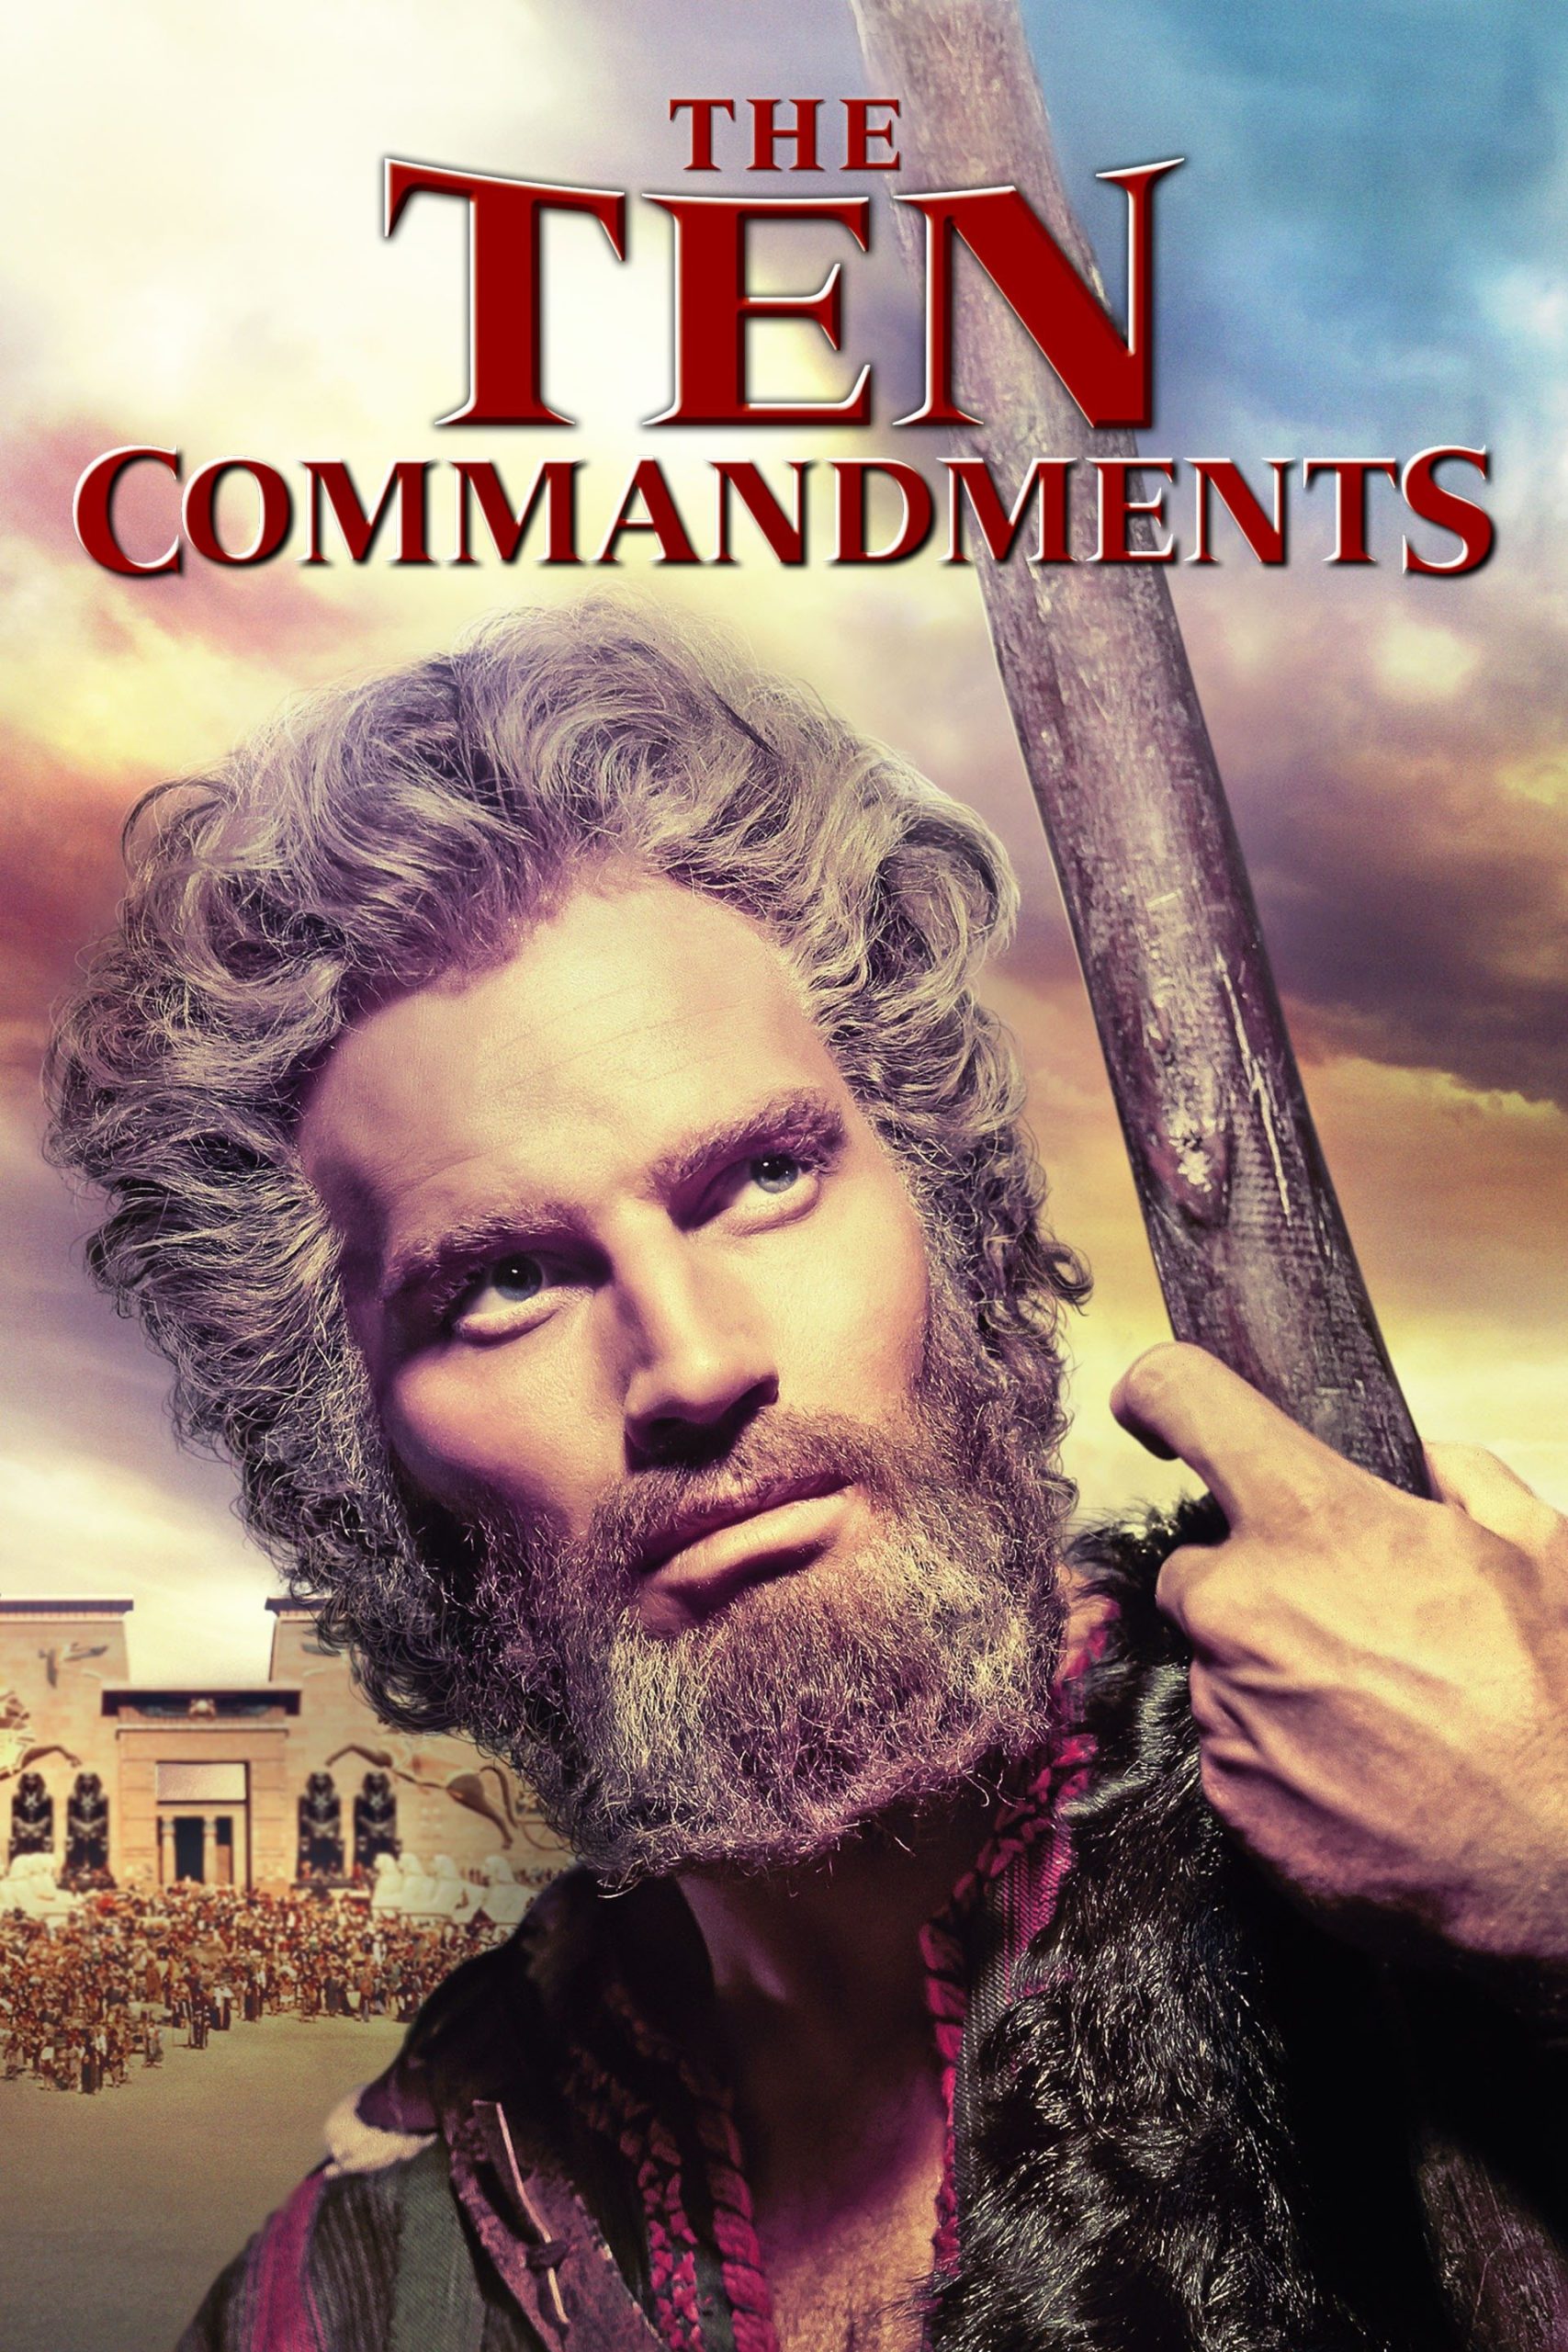 the ten commandments พากย์ไทย เต็มเรื่อง Full HD 24 ช.ม.